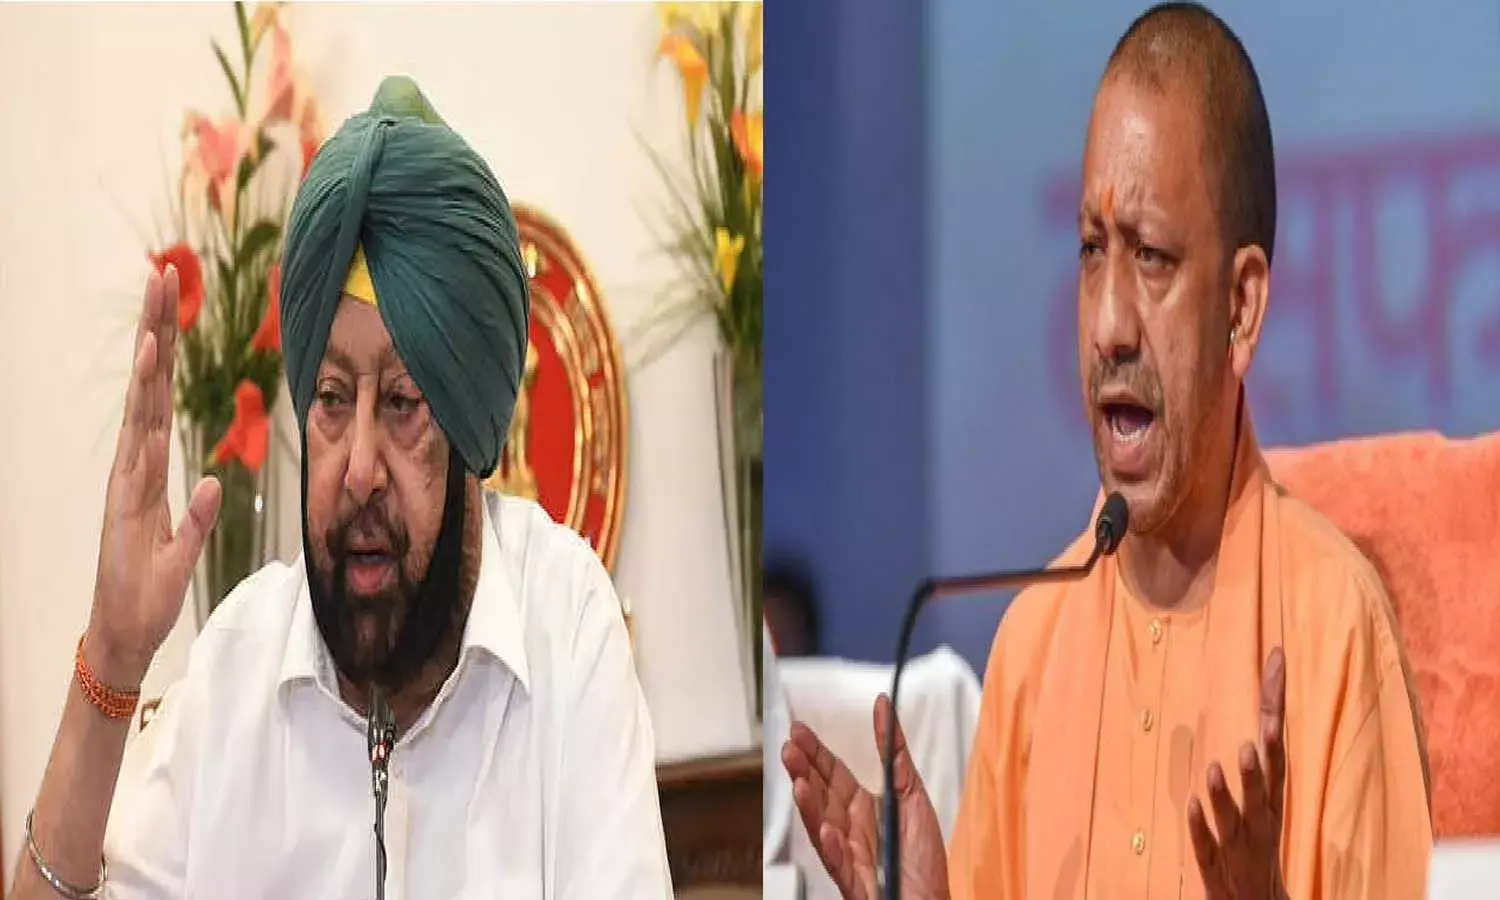 दो CM आमने-सामने: योगी के ट्वीट पर भड़के कैप्टन, पंजाब का माहौल बिगाड़ने का आरोप